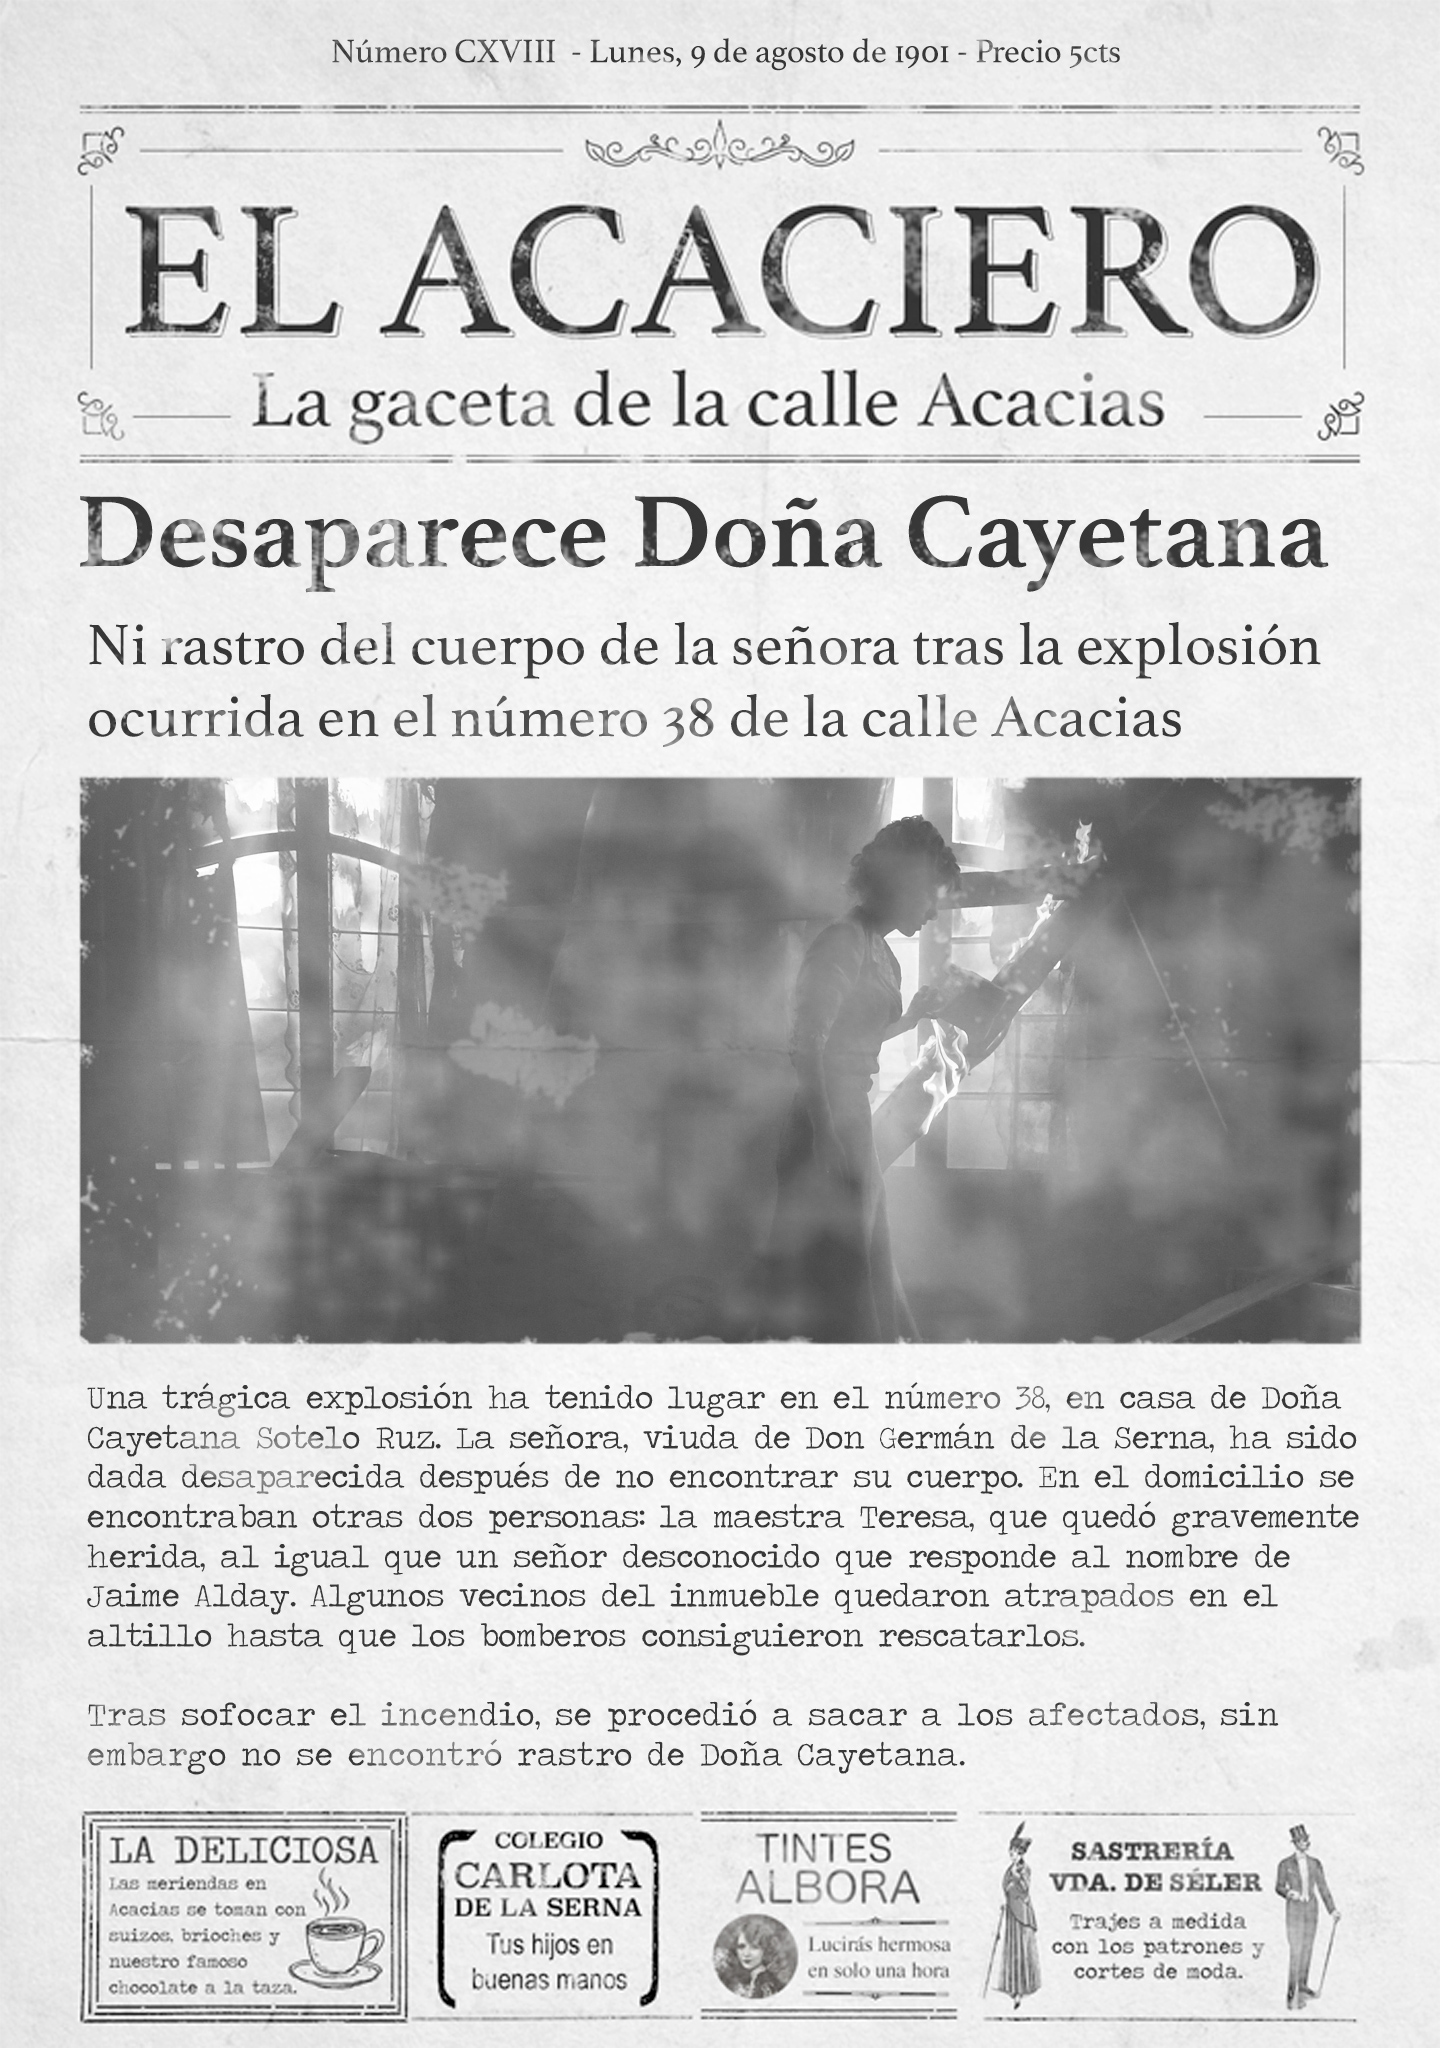 Doña Cayetana desparece en una trágica explosión que tuvo lugar en su casa